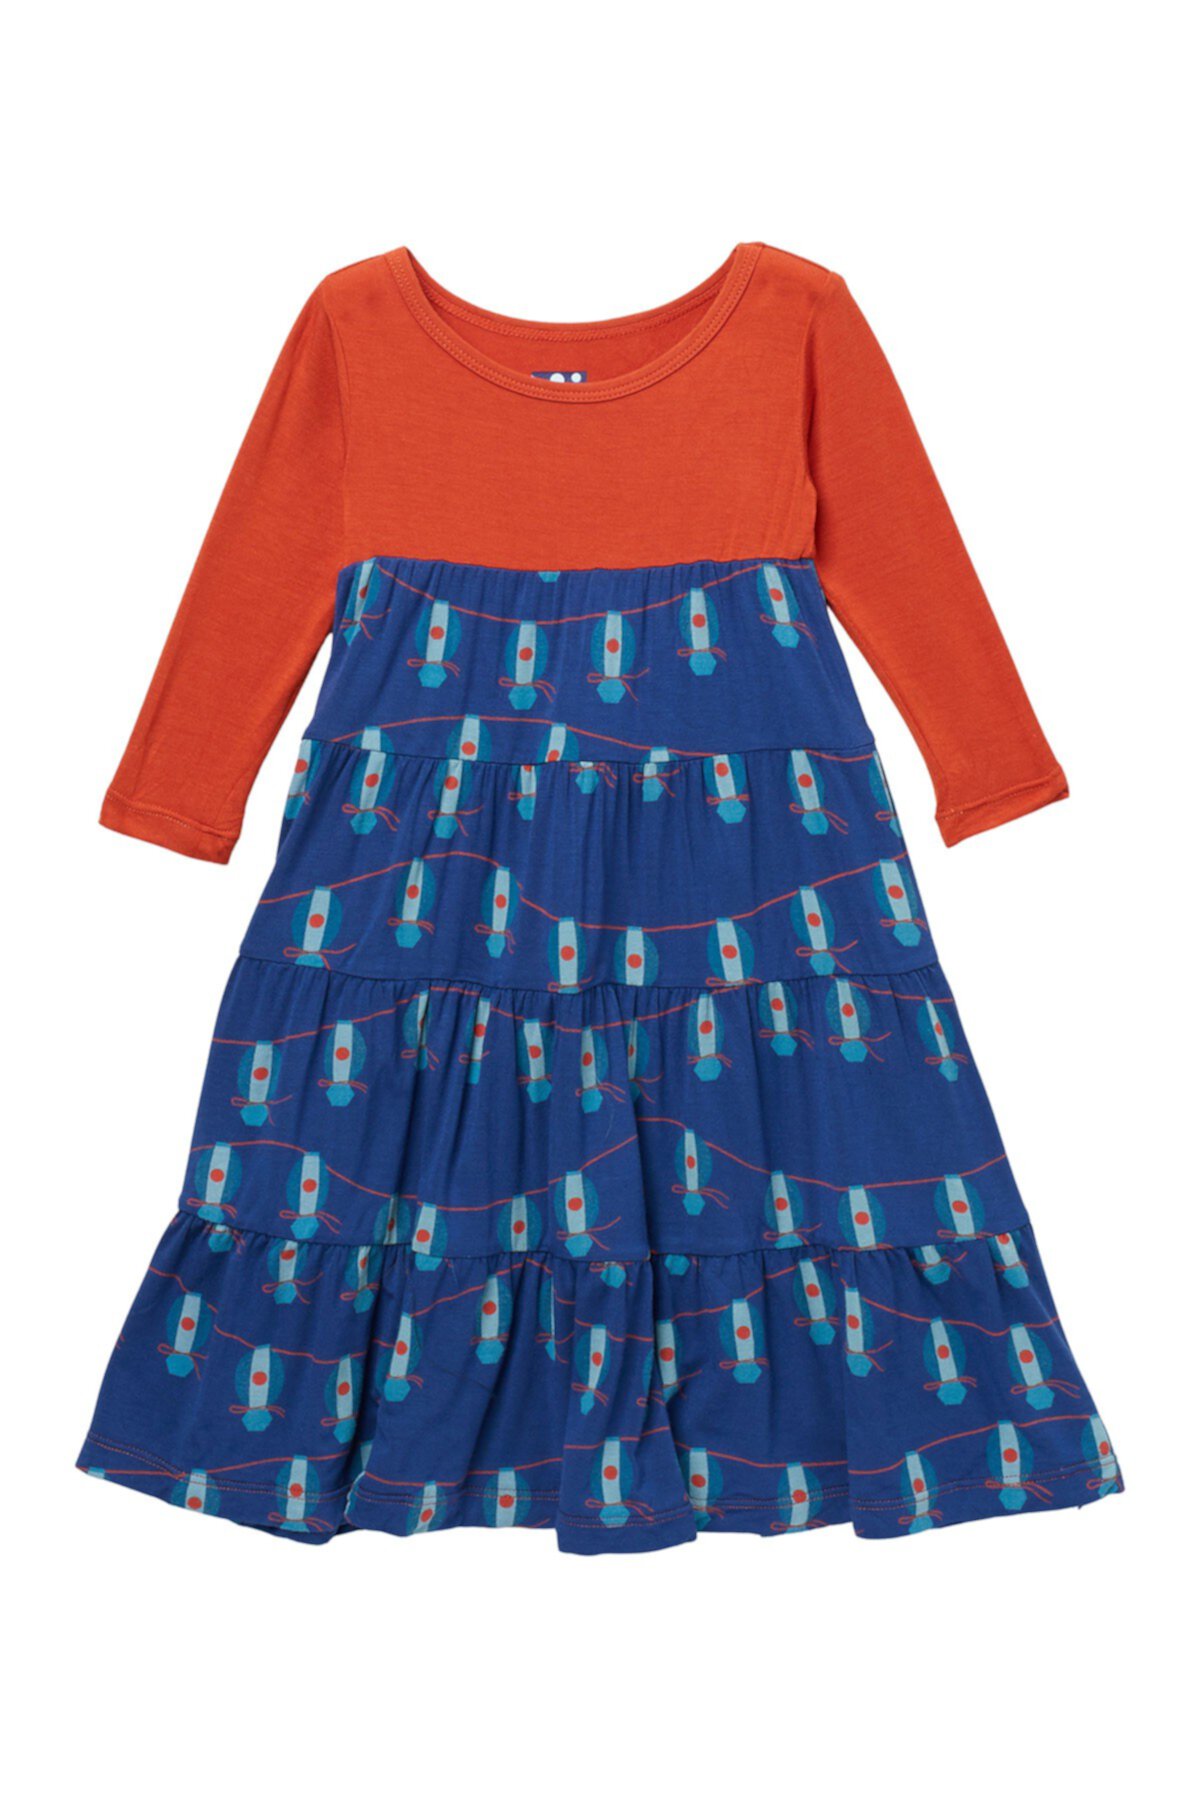 Многоярусное платье с длинным рукавом с рисунком (для детей 6-24 мес.) KicKee Pants